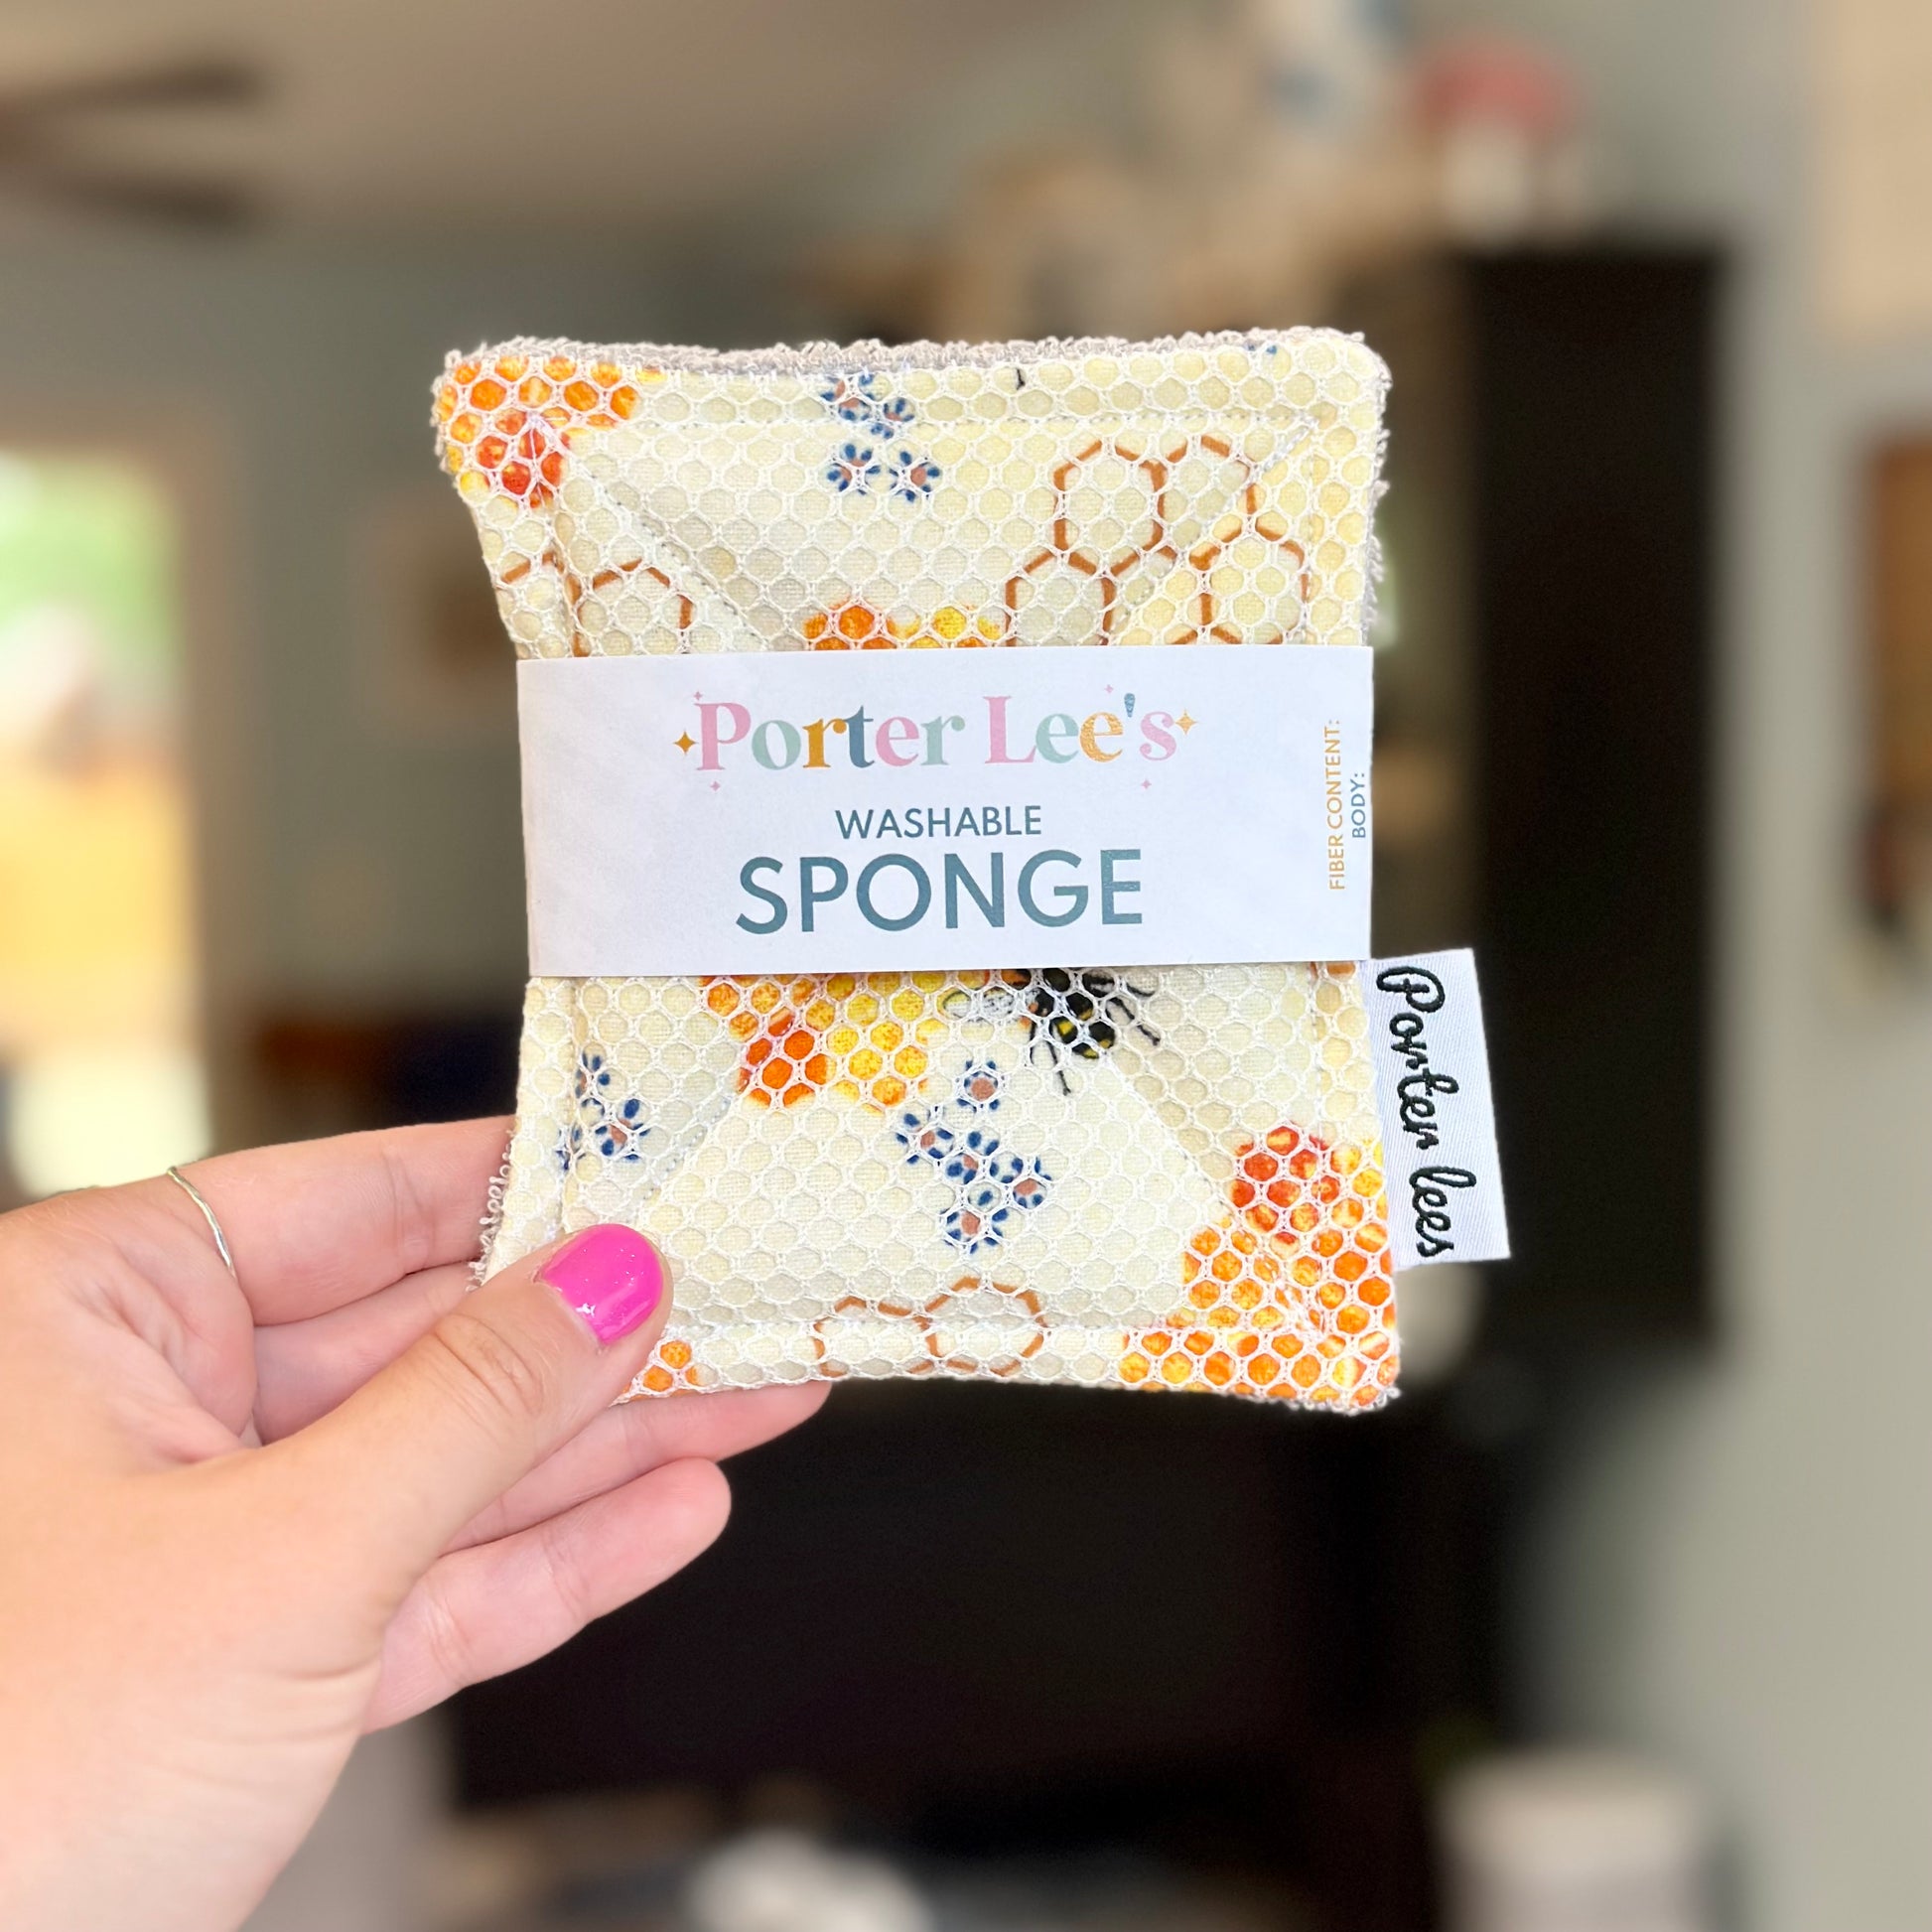 Reusable Sponge - Surprise Print – THE GOOD FILL